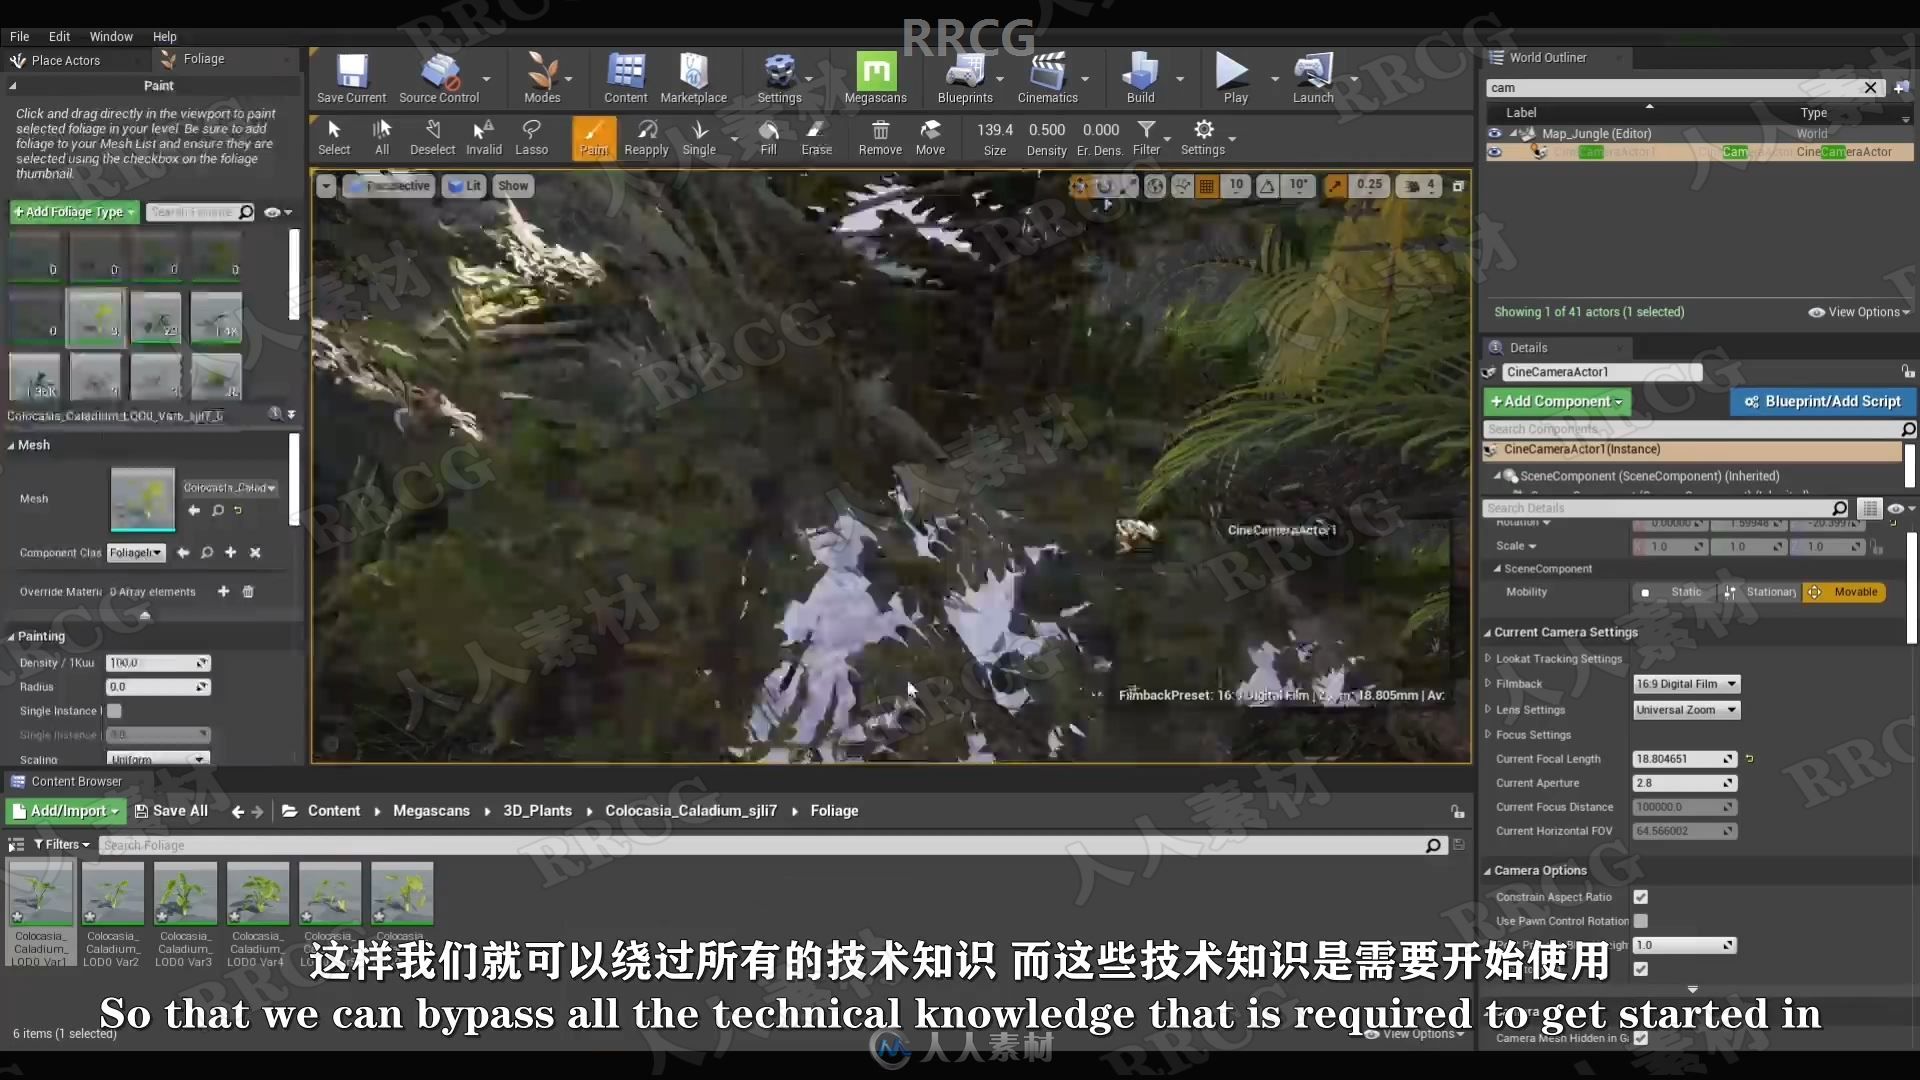 【中文字幕】Unreal Engine虚幻引擎制作逼真森林自然环境场景视频教程